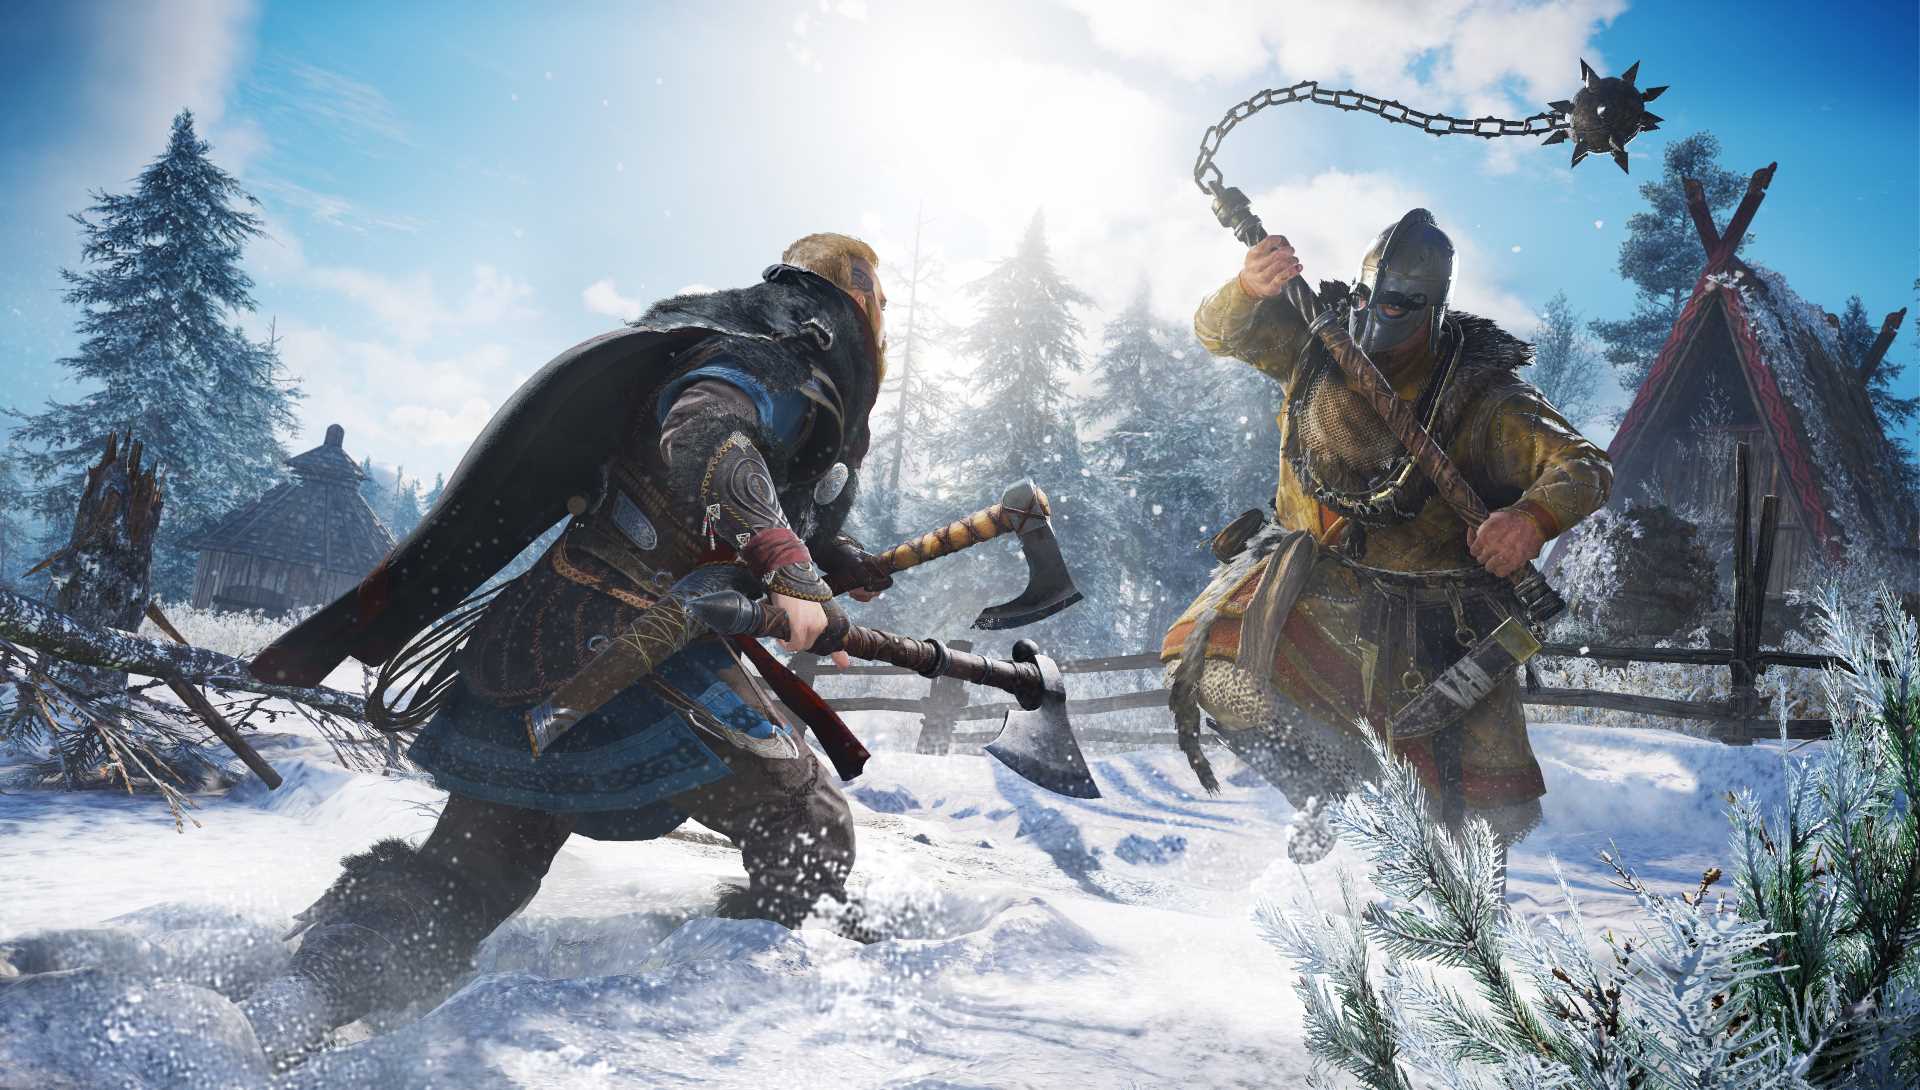 Pour construire l'univers d'« Assassin's Creed Valhalla », les équipes d'Ubisoft ont fait appel à des historiens spécialistes de l'ère viking.